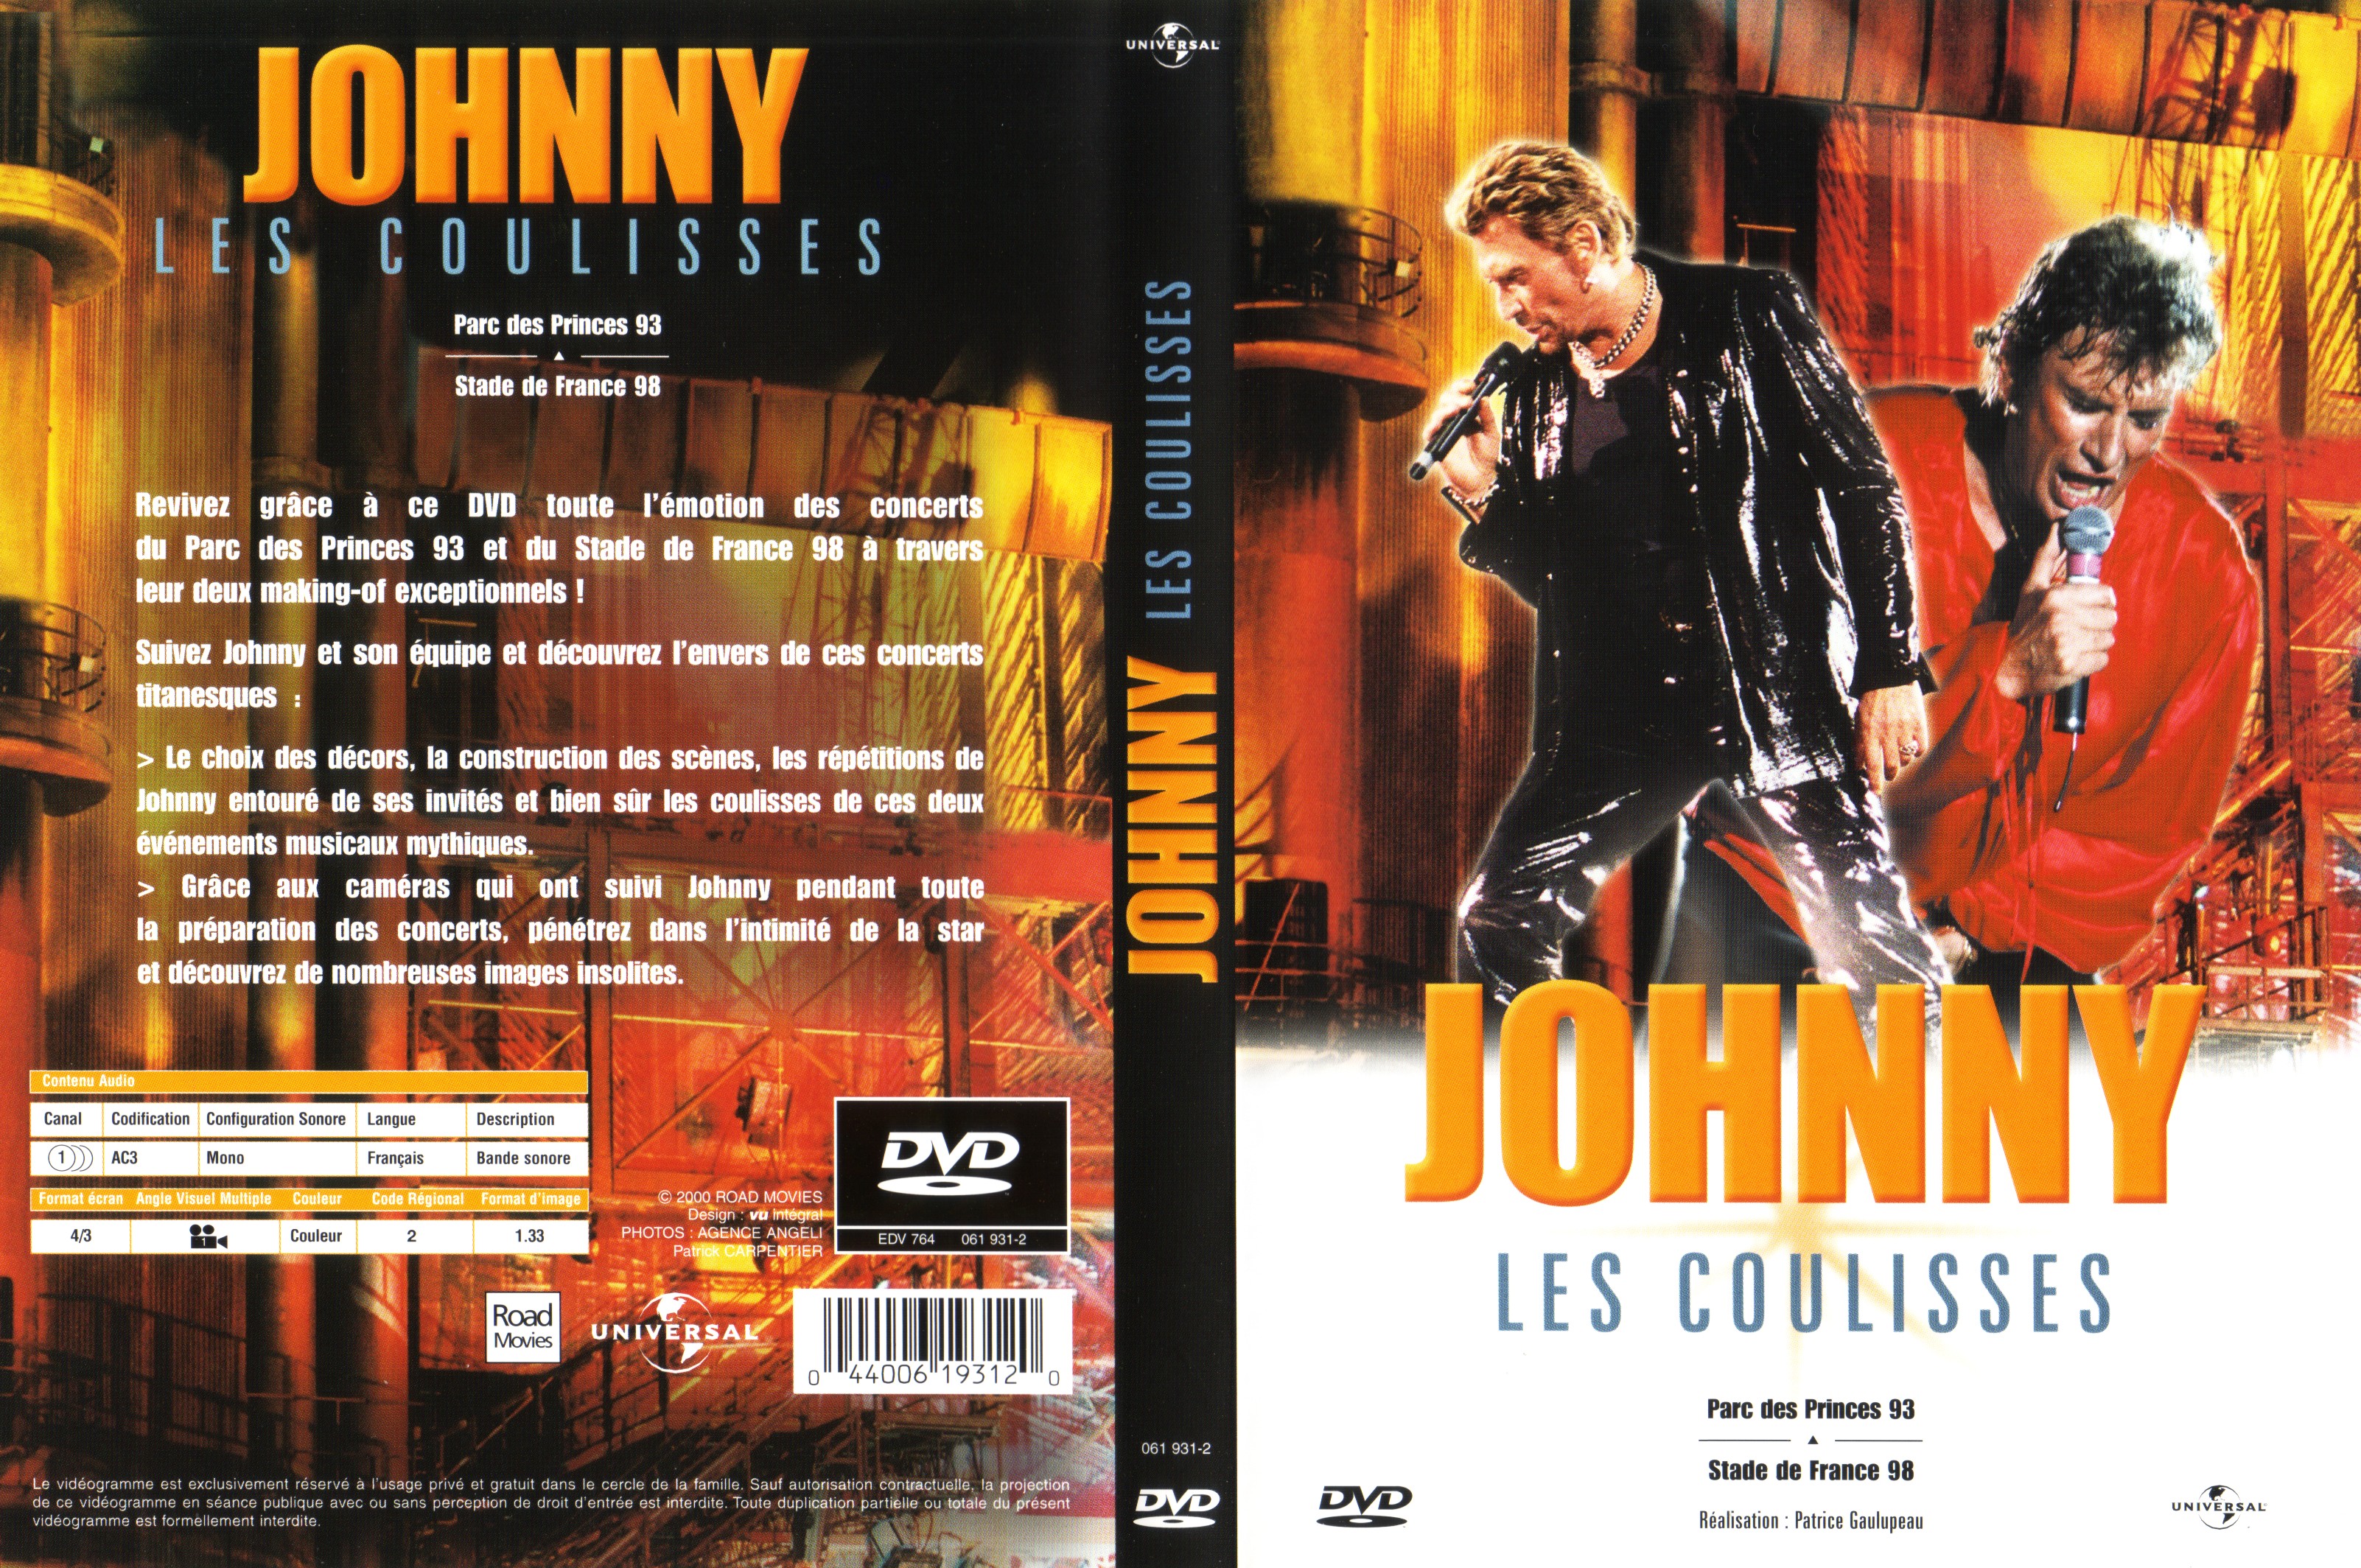 Jaquette DVD Johnny les coulisses